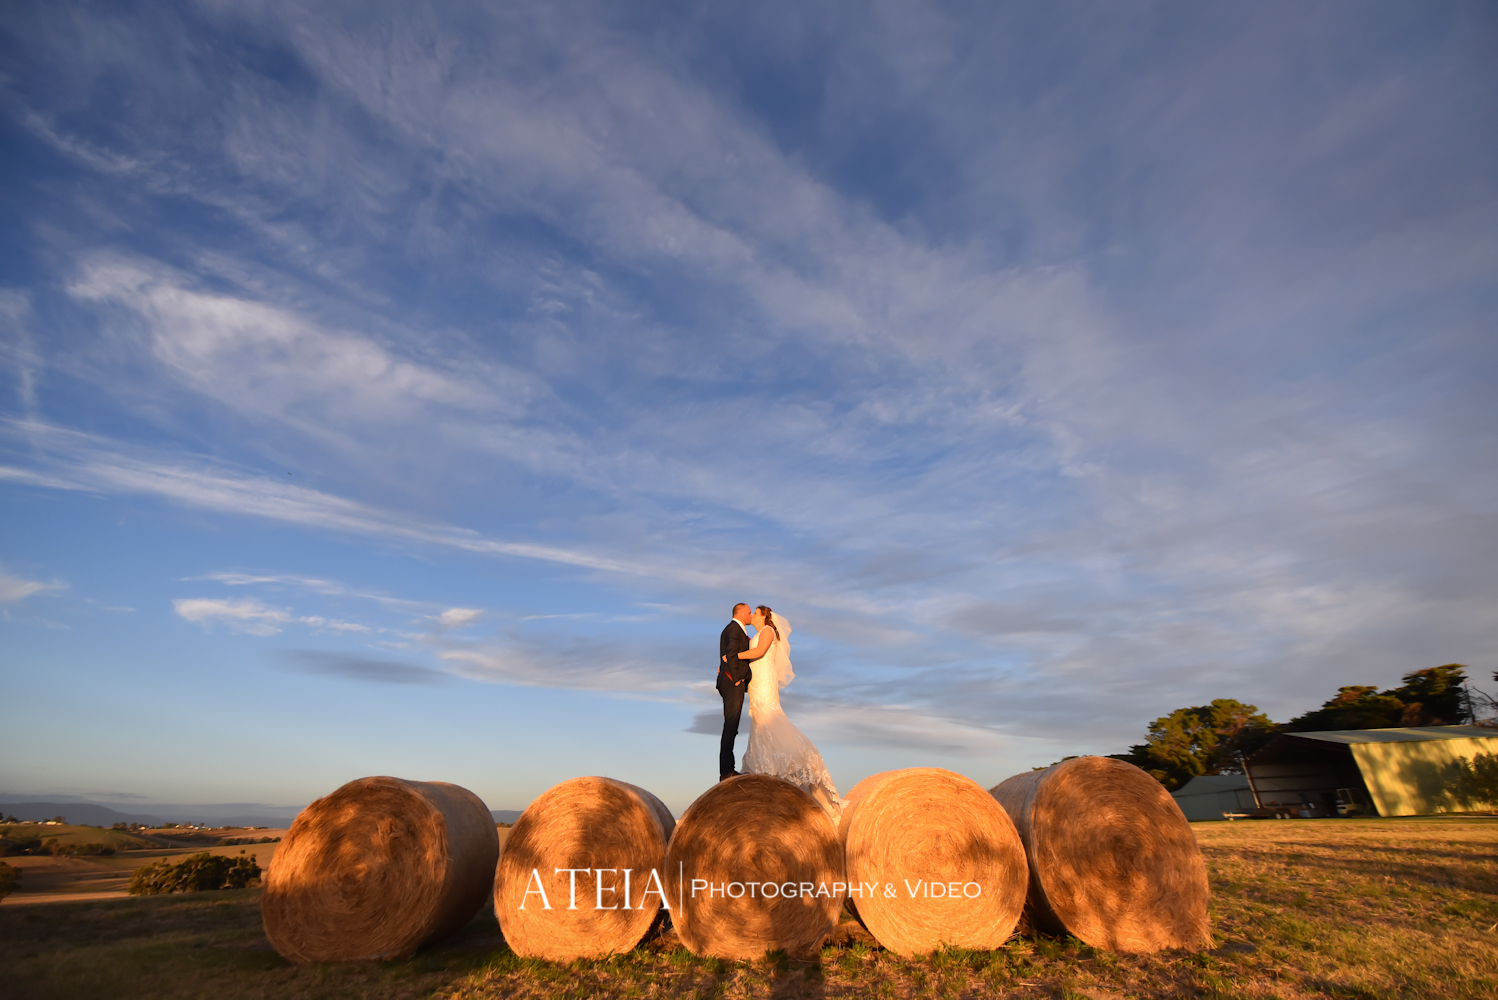 , Melbourne Wedding Photography &#8211; Vue on Halcyon / Belle et Blanc